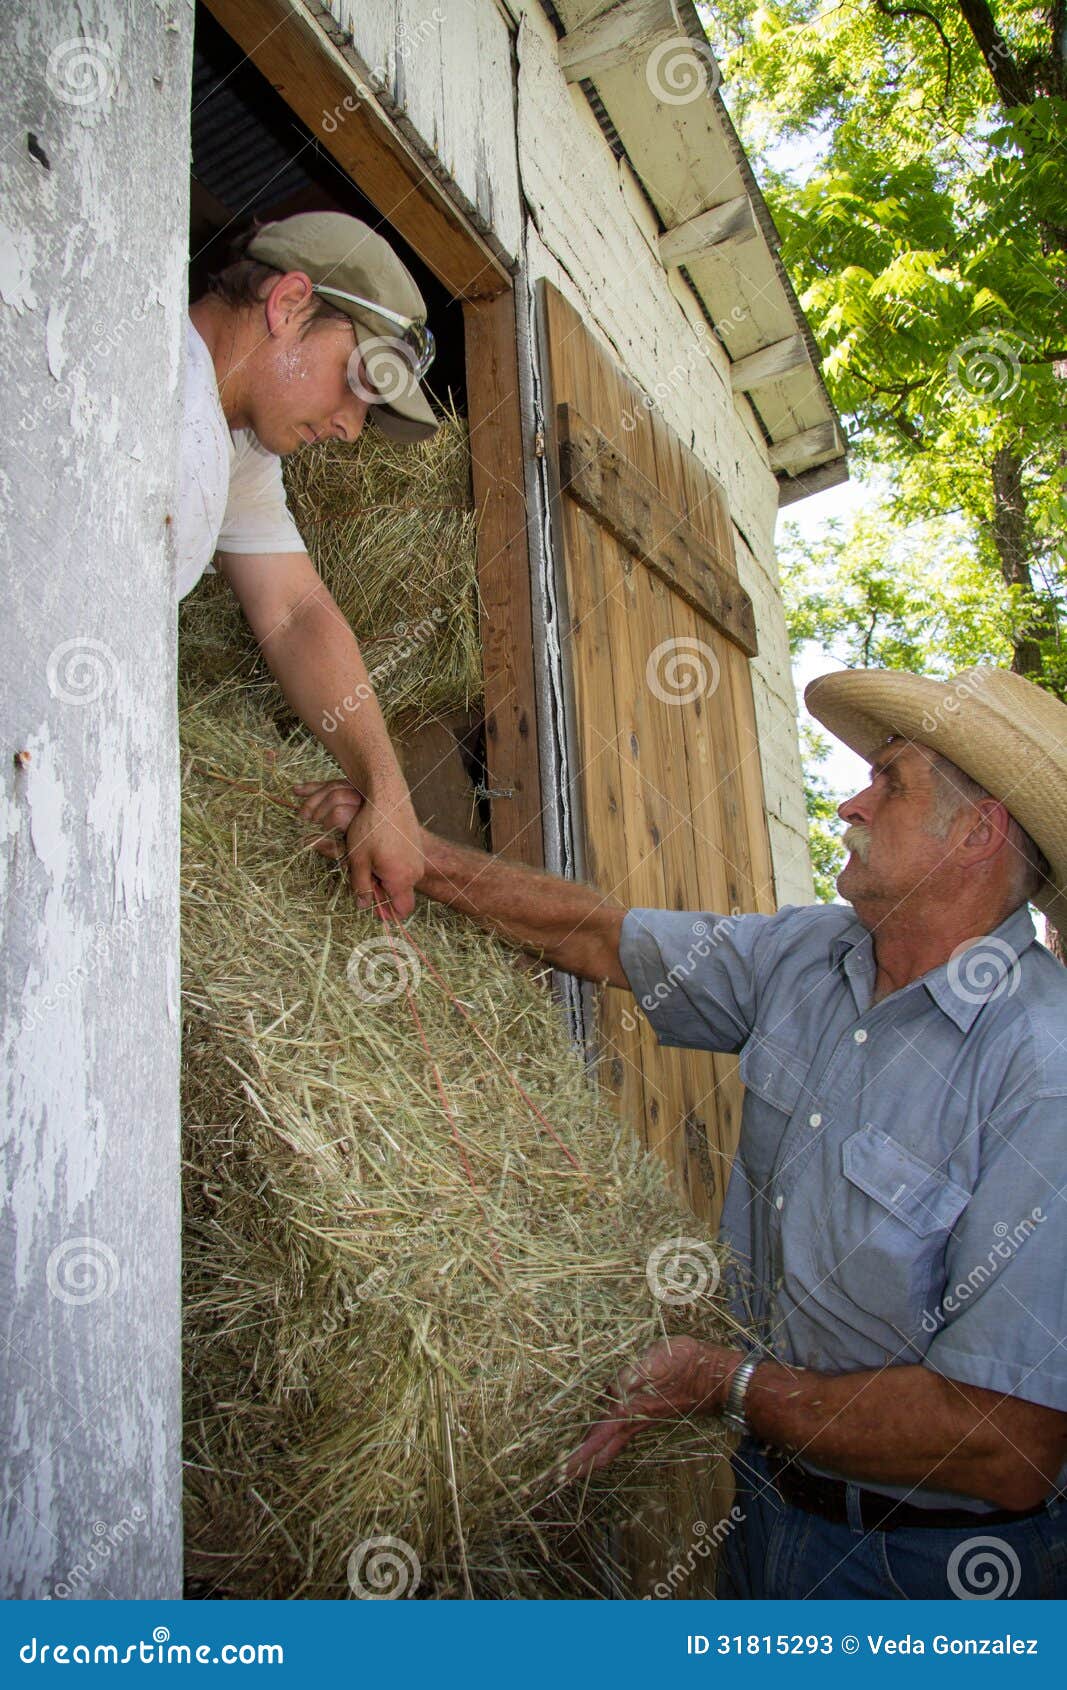 Farmers Loading Hay Into Barn Stock Photos - Image: 31815293